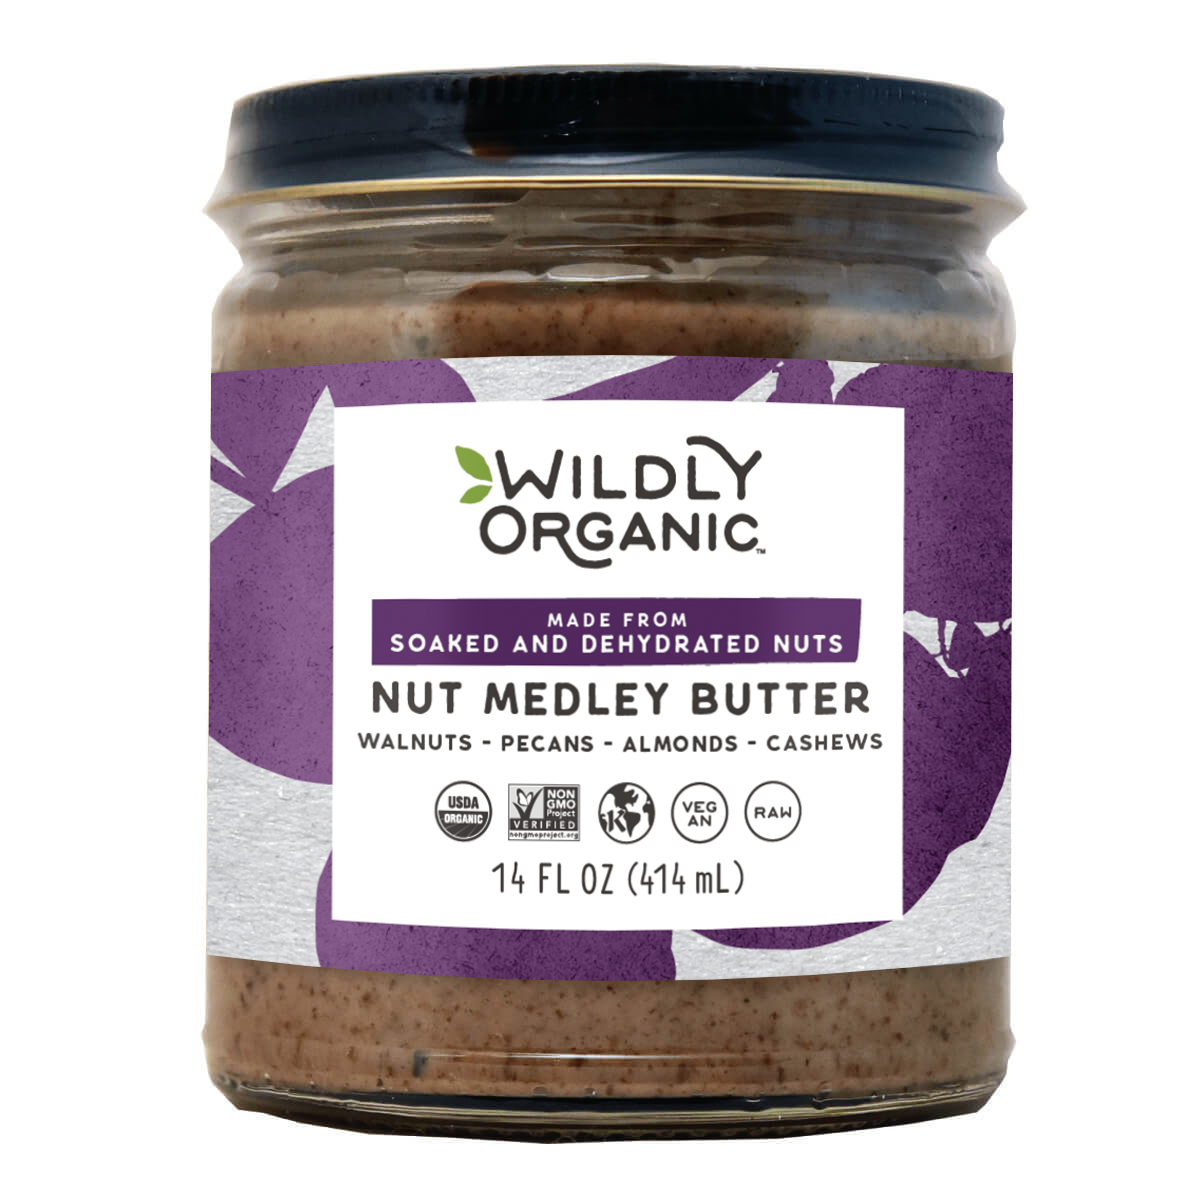 Nutmedley Butter Jar